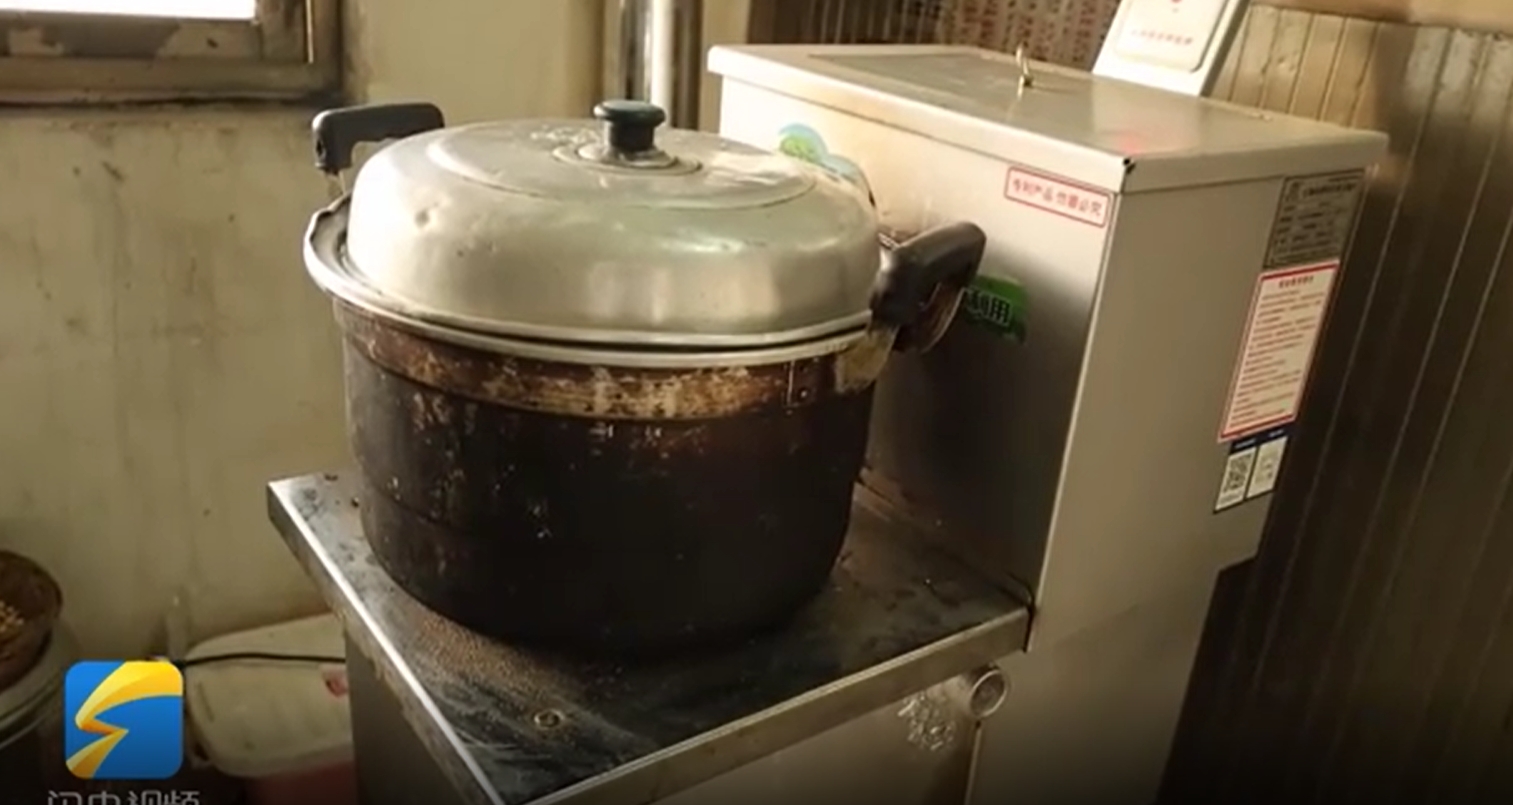 生物质地炊事水暖炉使用比较环保的生物质颗粒